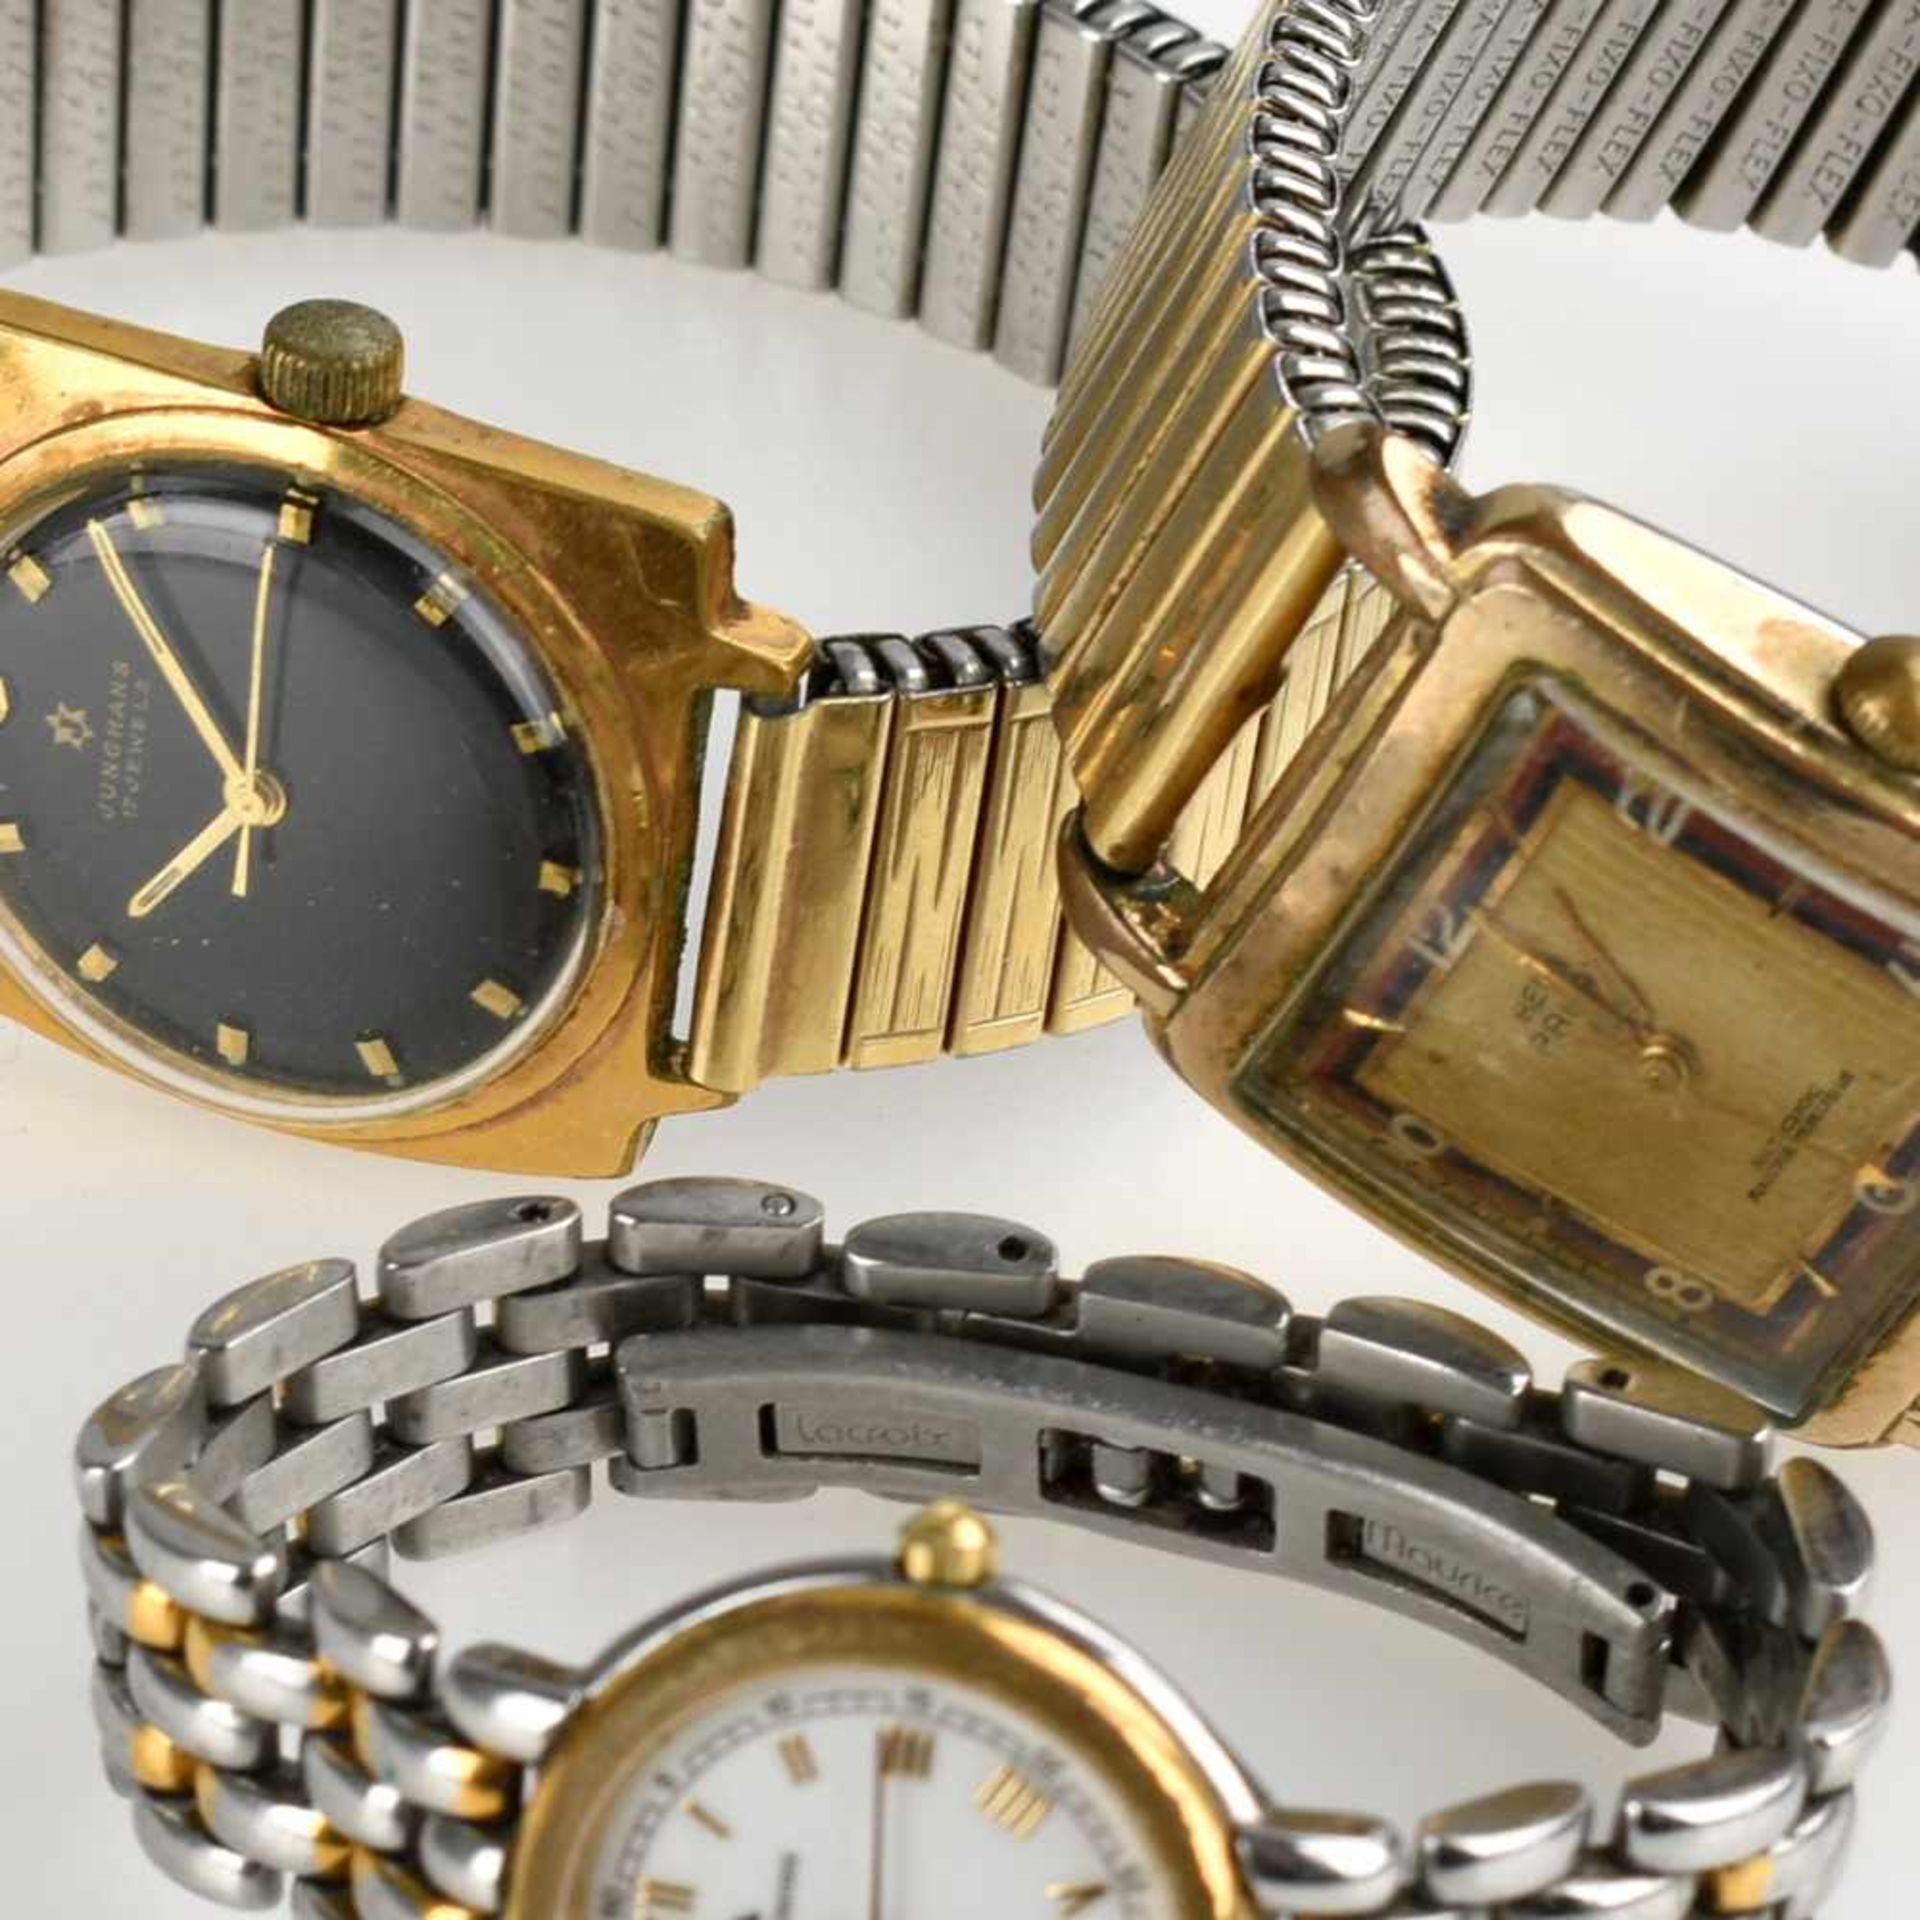 Drei Armbanduhren 2 Herrenarmbanduhren und 1 Damenarmbanduhr (Maurice Lacroix), ungeprüft, Alters-